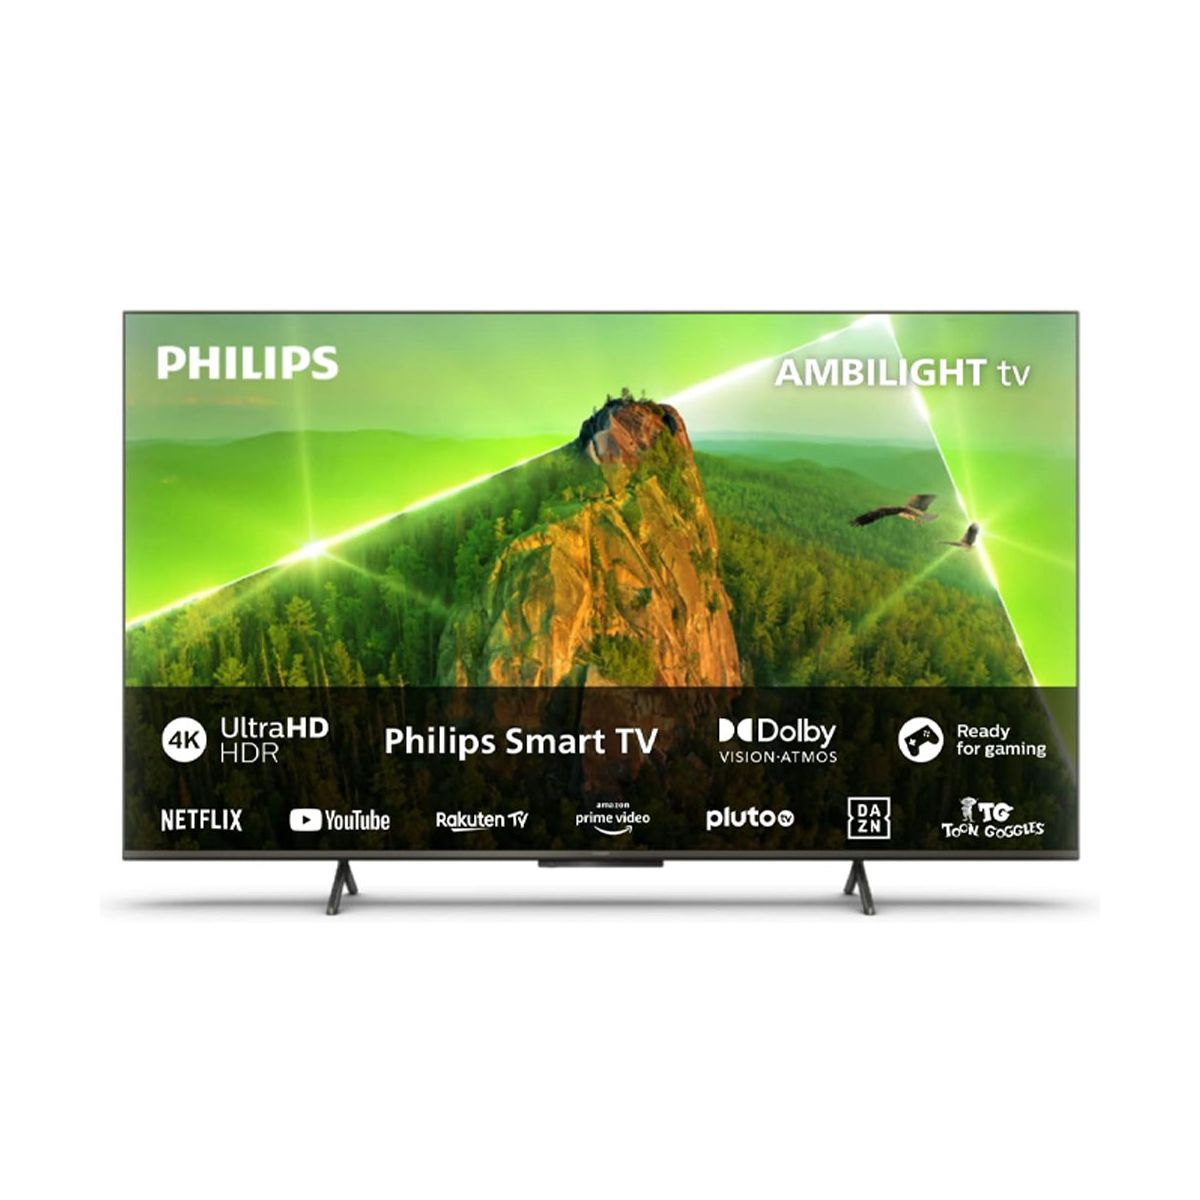 Sayfa - Philips Televizyonlar Fiyatları 2